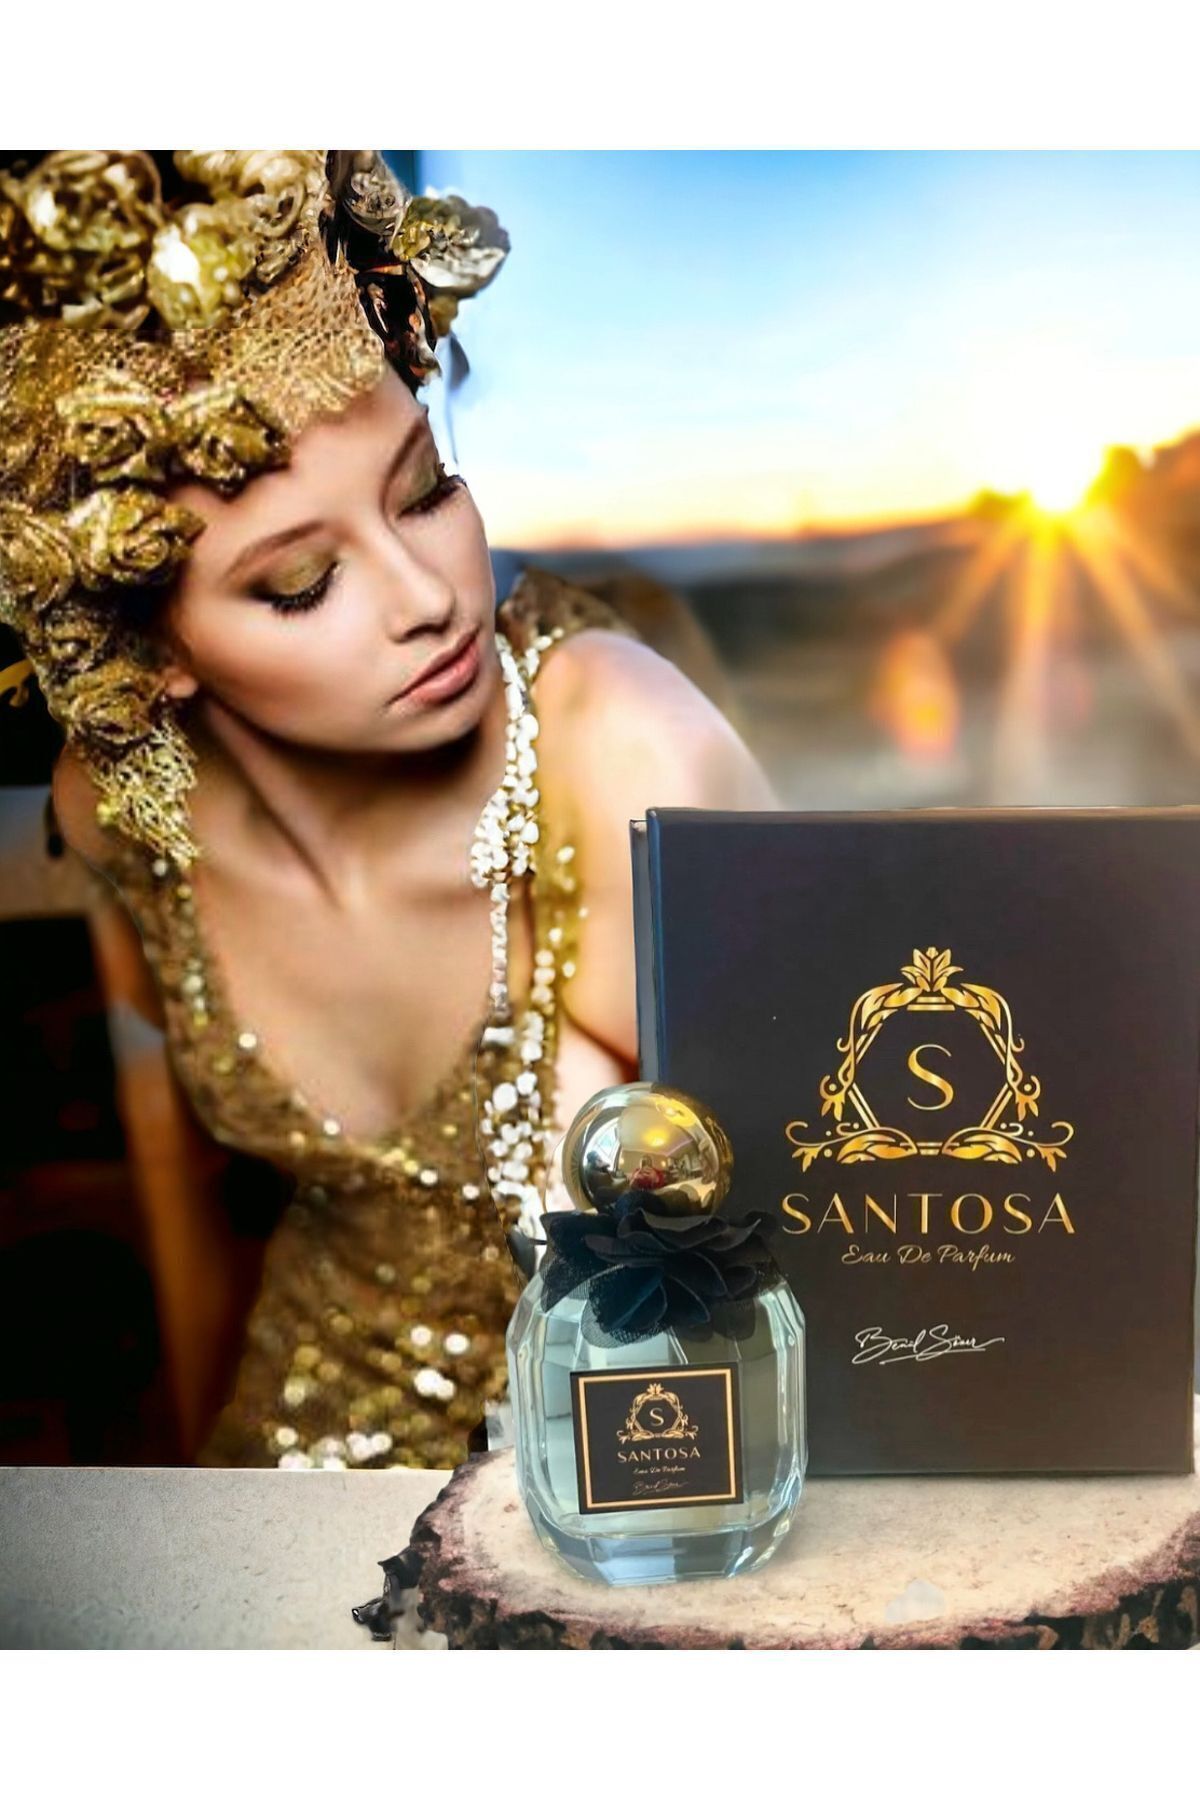 SANTOSA Kadın Niche Parfüm Etkileyici Beyaz Orkide Amber Misk Ve Taze Notalar Ithal 100ml Edp